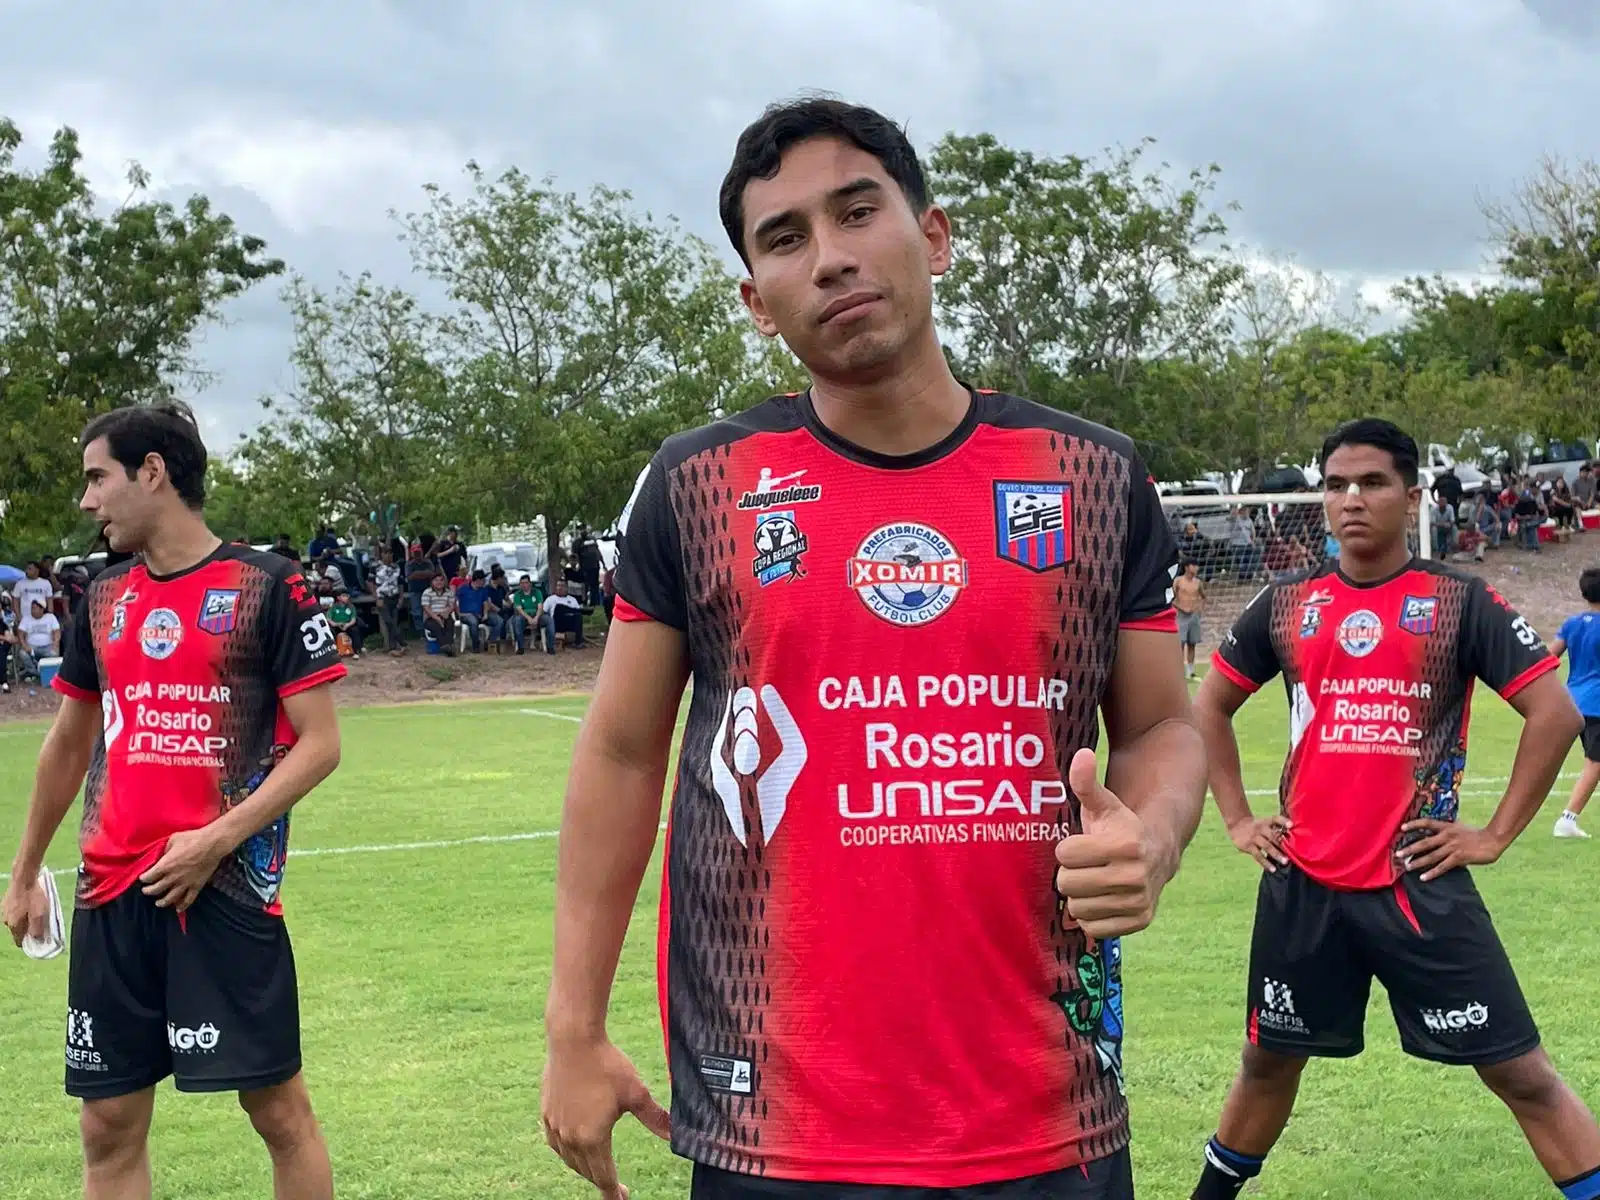 Sair Huerta suele hacer goles con mucha técnica en el fútbol sinaloense